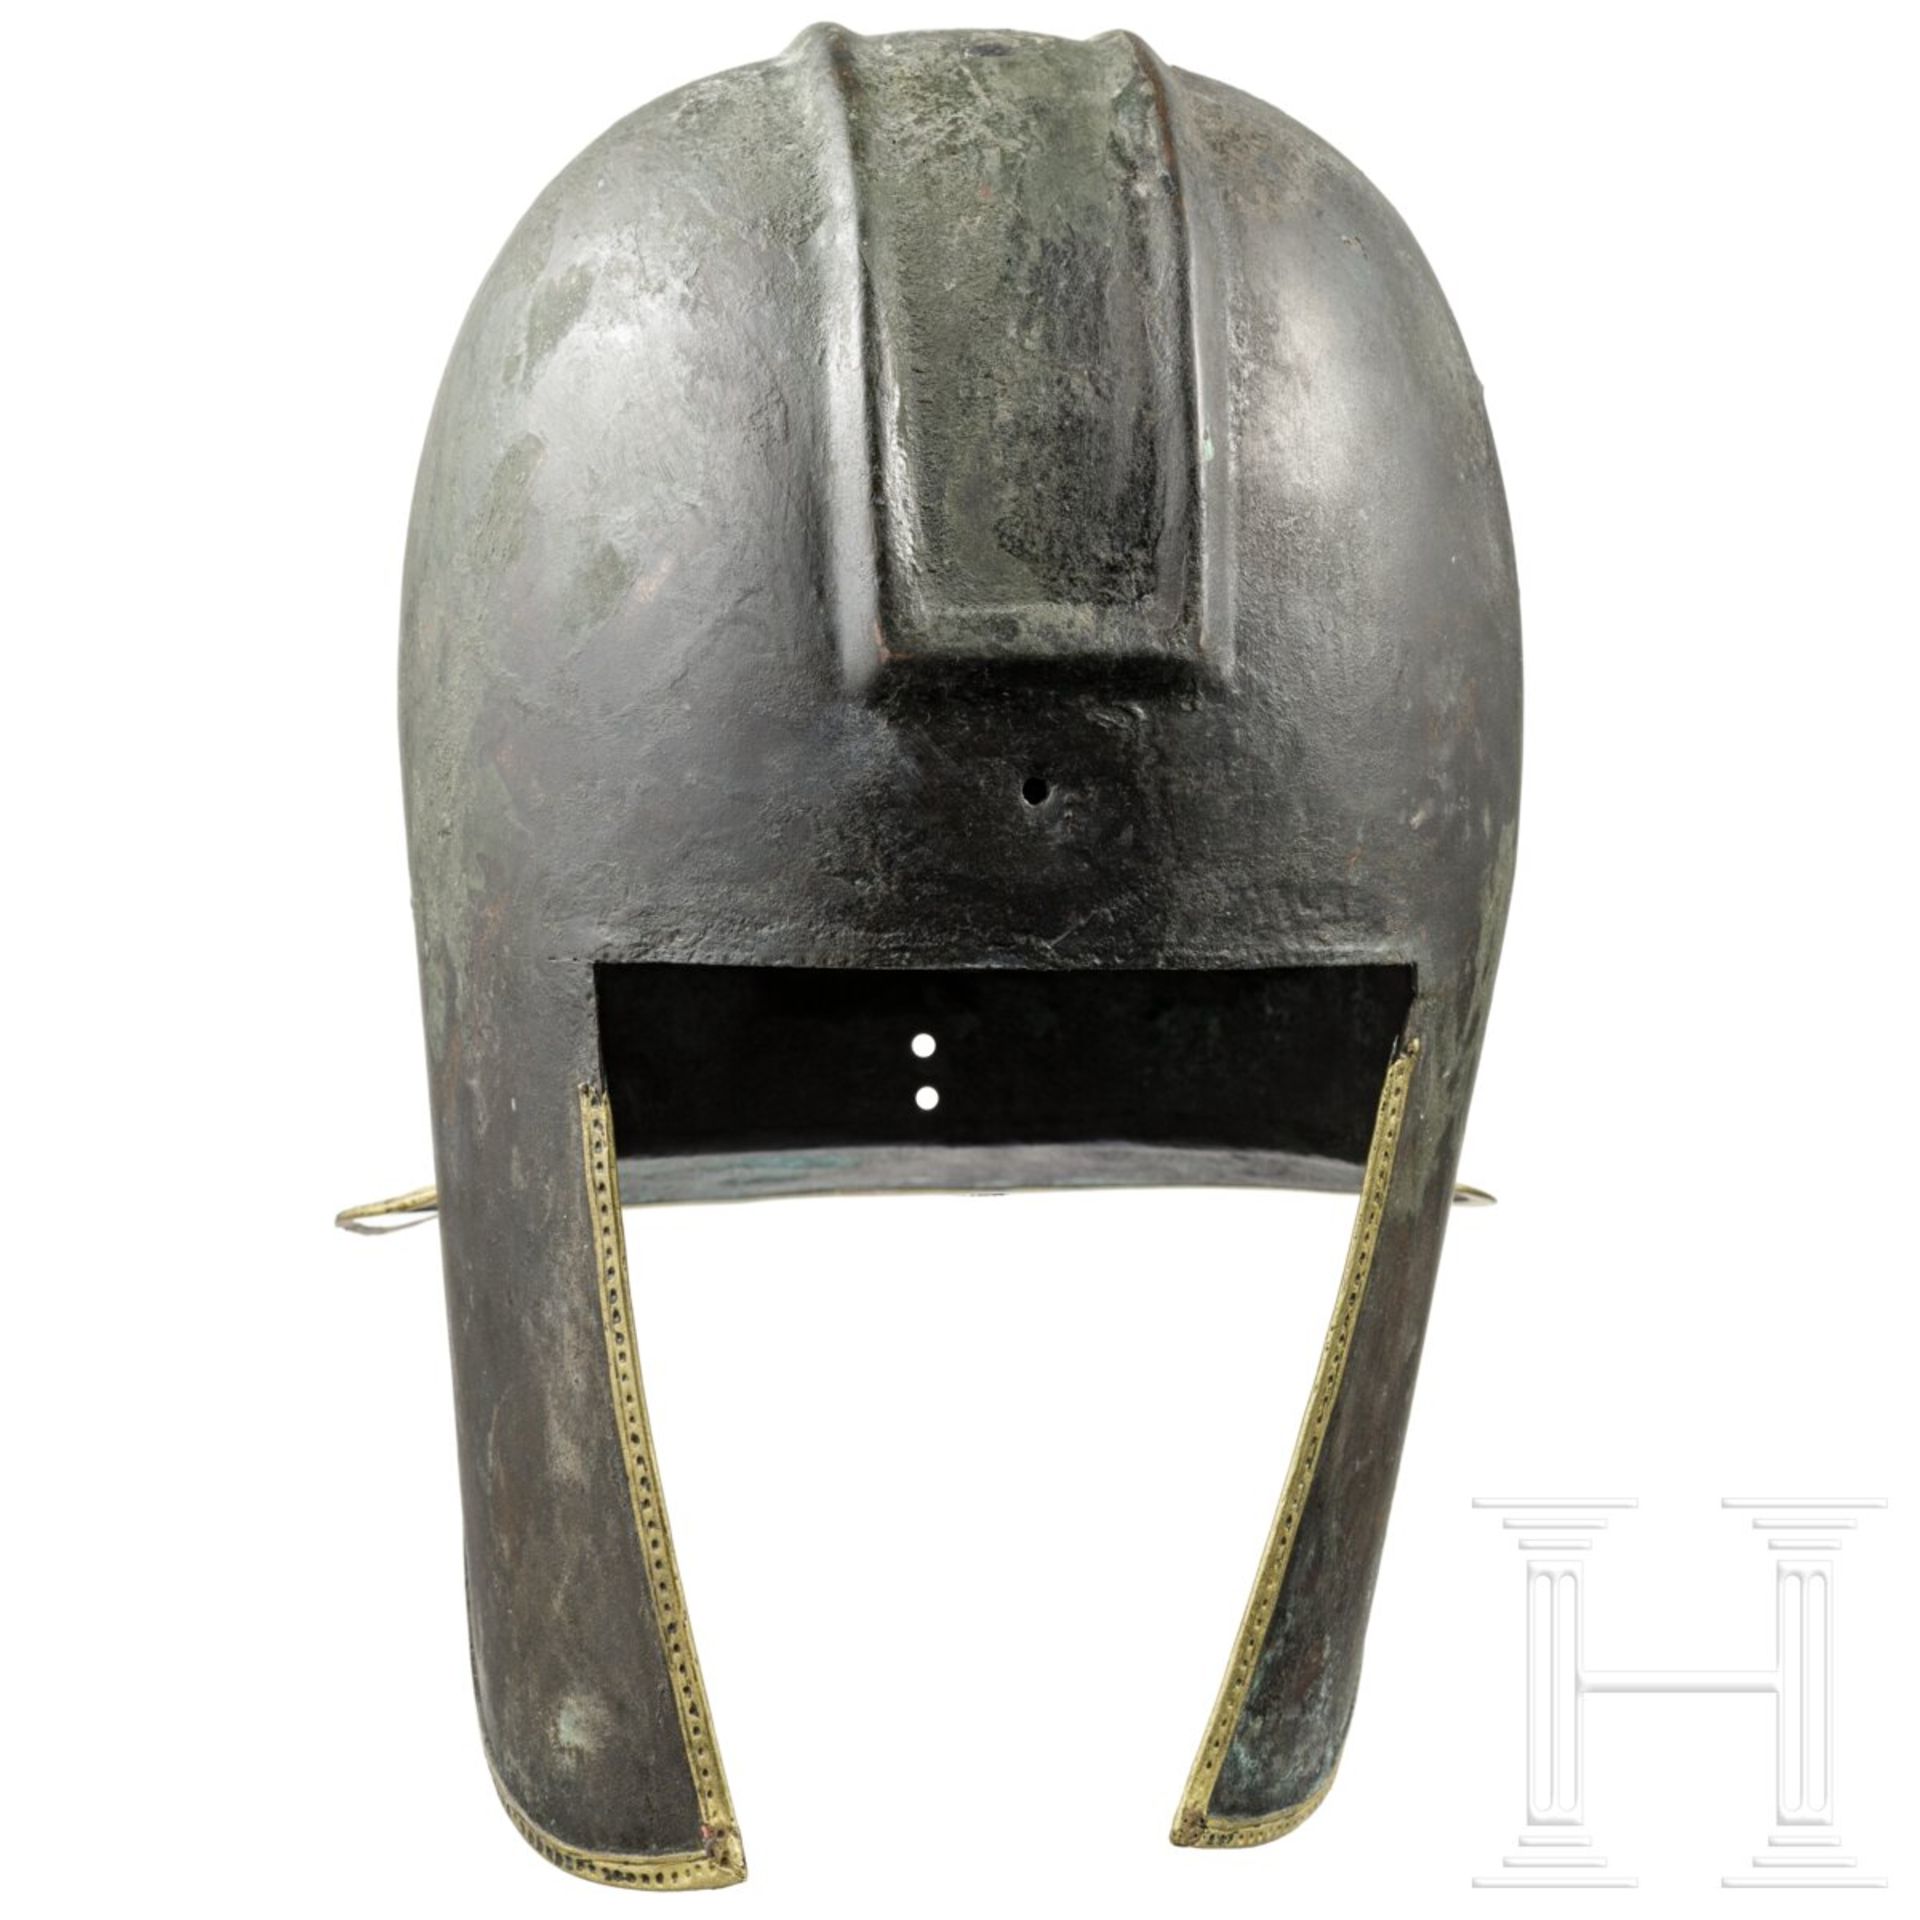 Illyrischer Helm, Typ III A, Griechenland, 6. - 5. Jhdt. v. Chr.  - Bild 3 aus 9